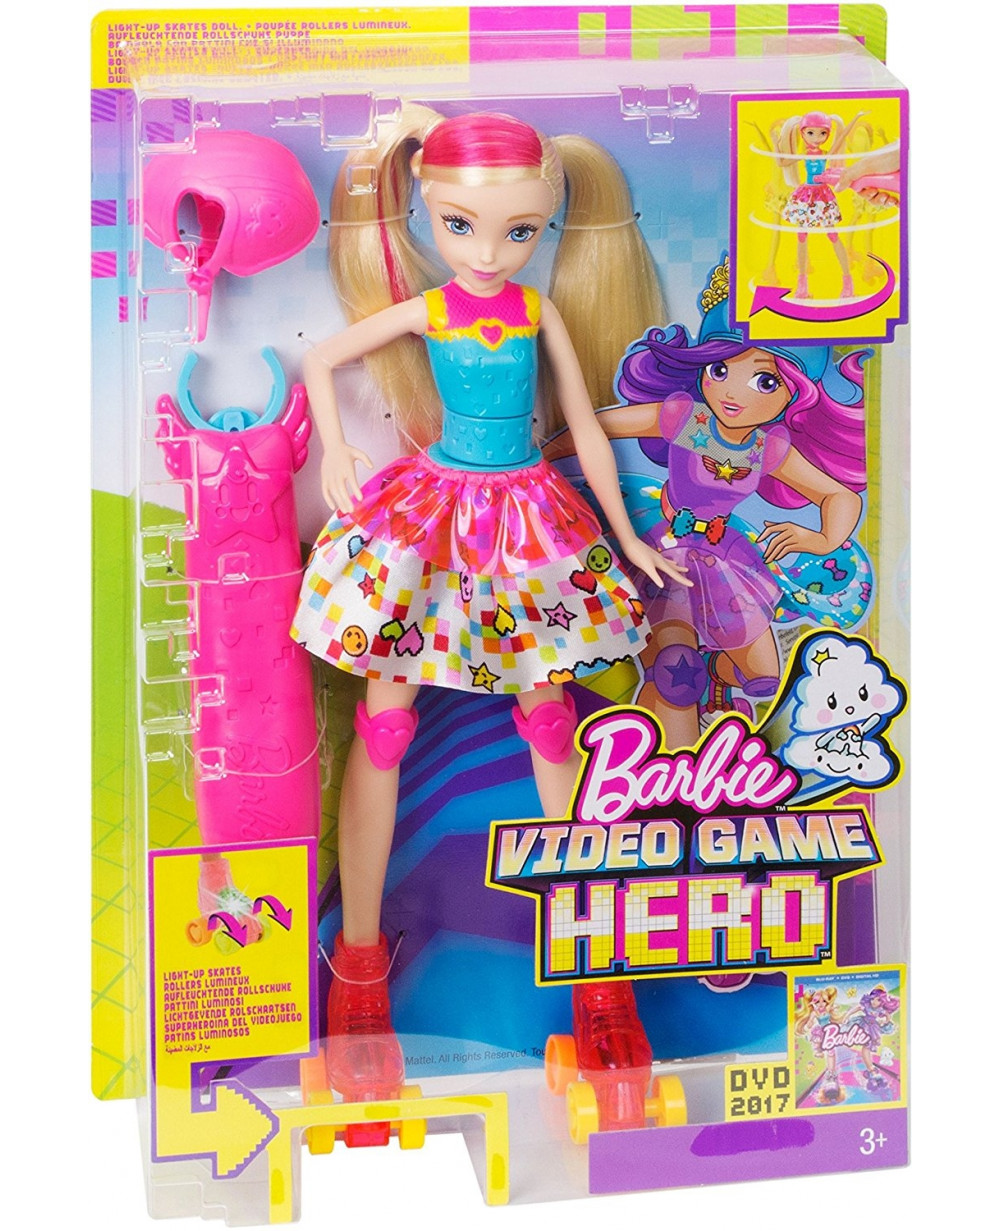 Papusa Barbie din seria ”Video Gamer”